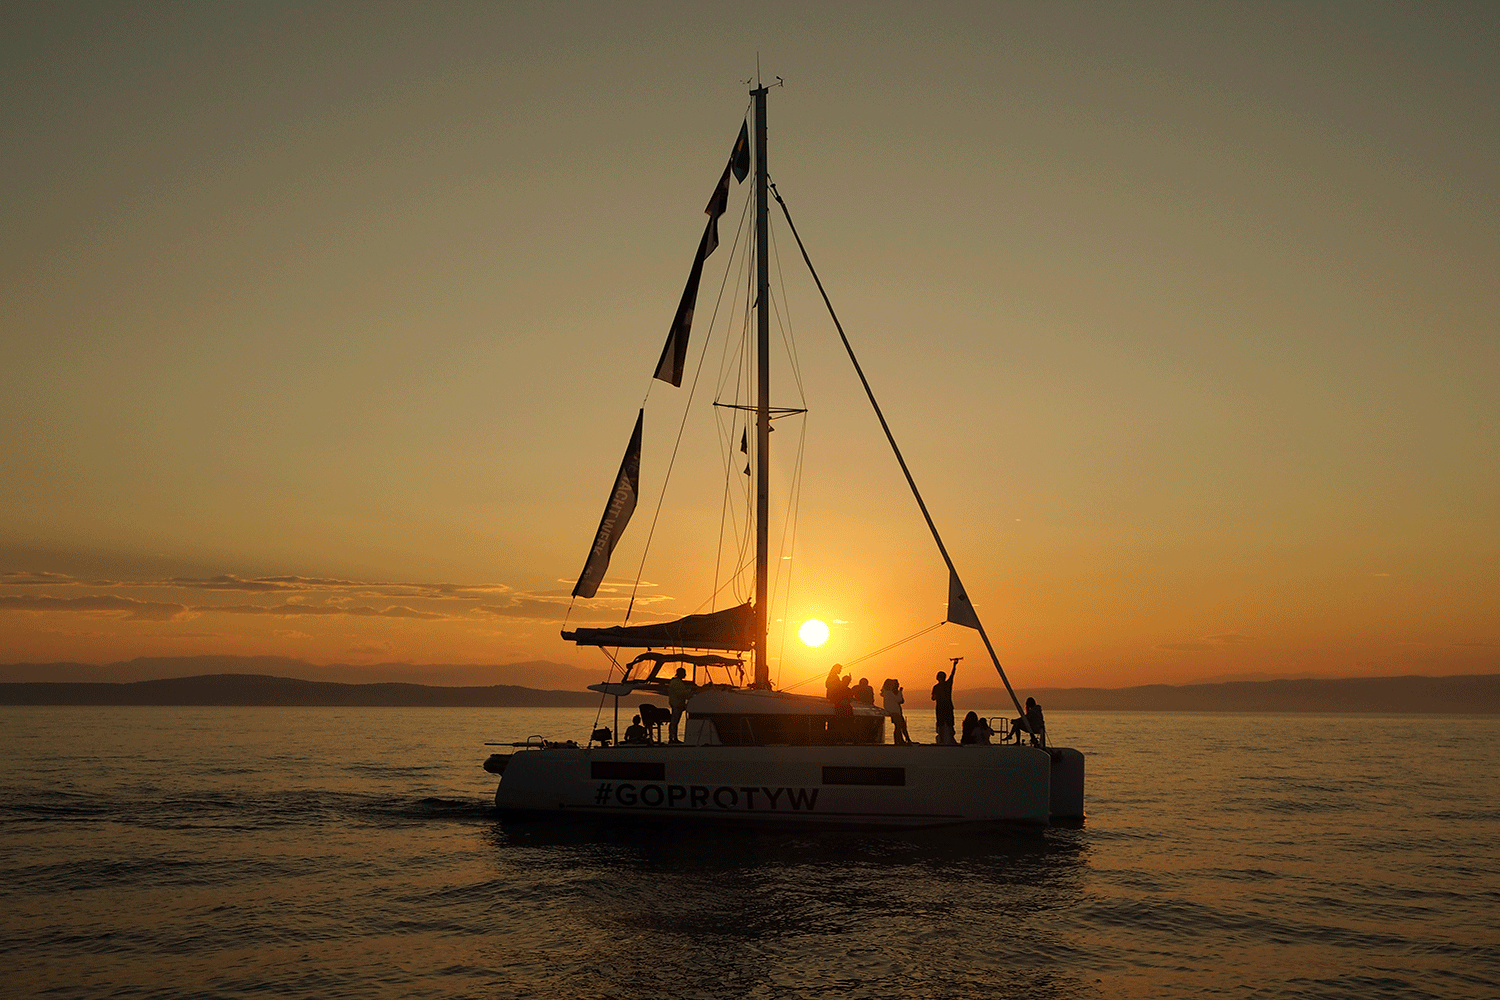 Sunrise on the Adriatic